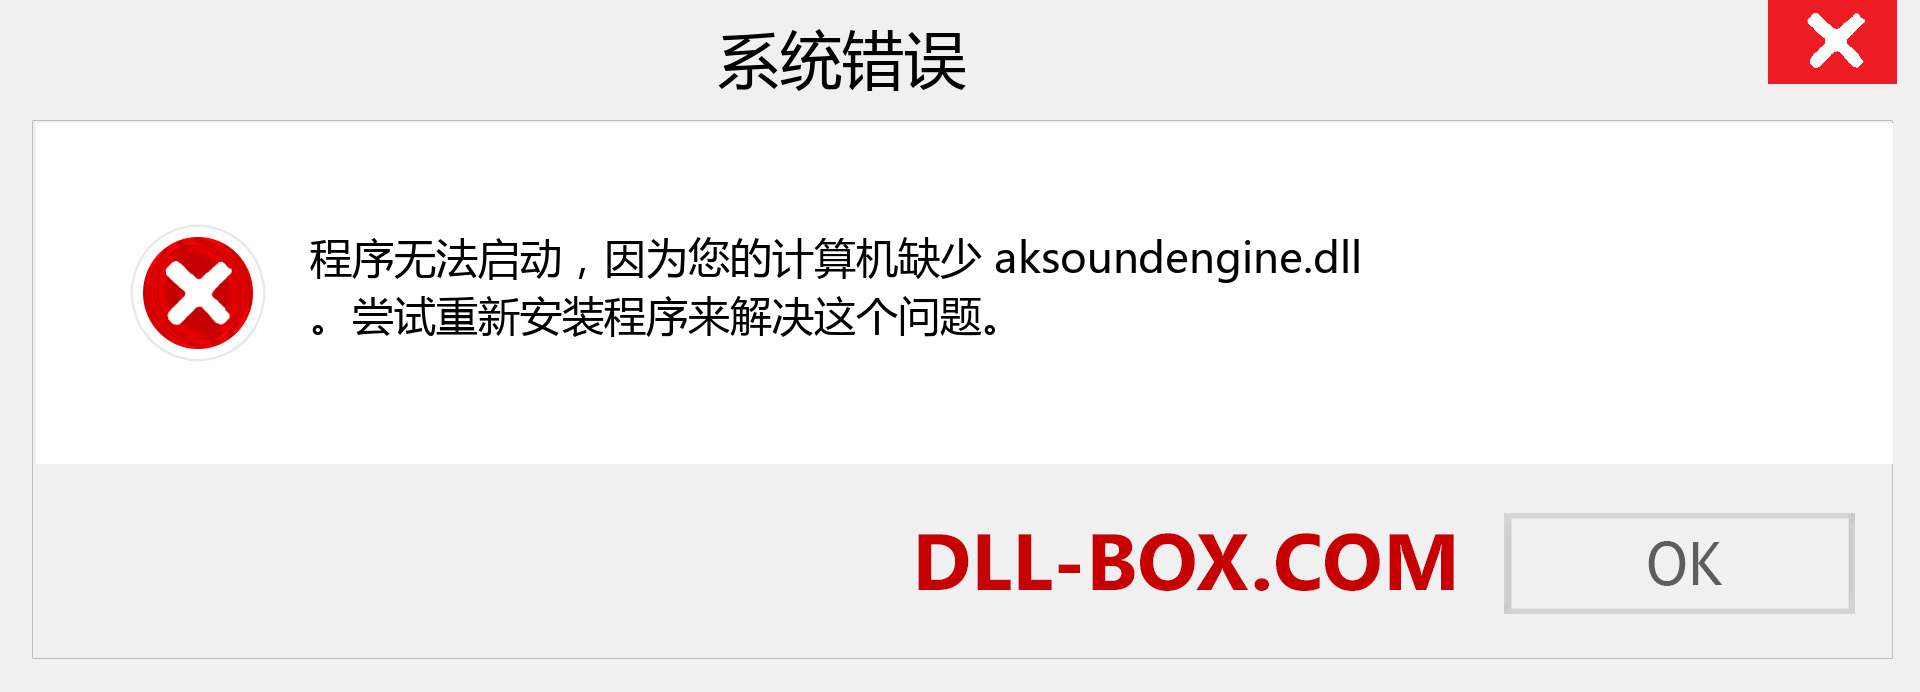 aksoundengine.dll 文件丢失？。 适用于 Windows 7、8、10 的下载 - 修复 Windows、照片、图像上的 aksoundengine dll 丢失错误